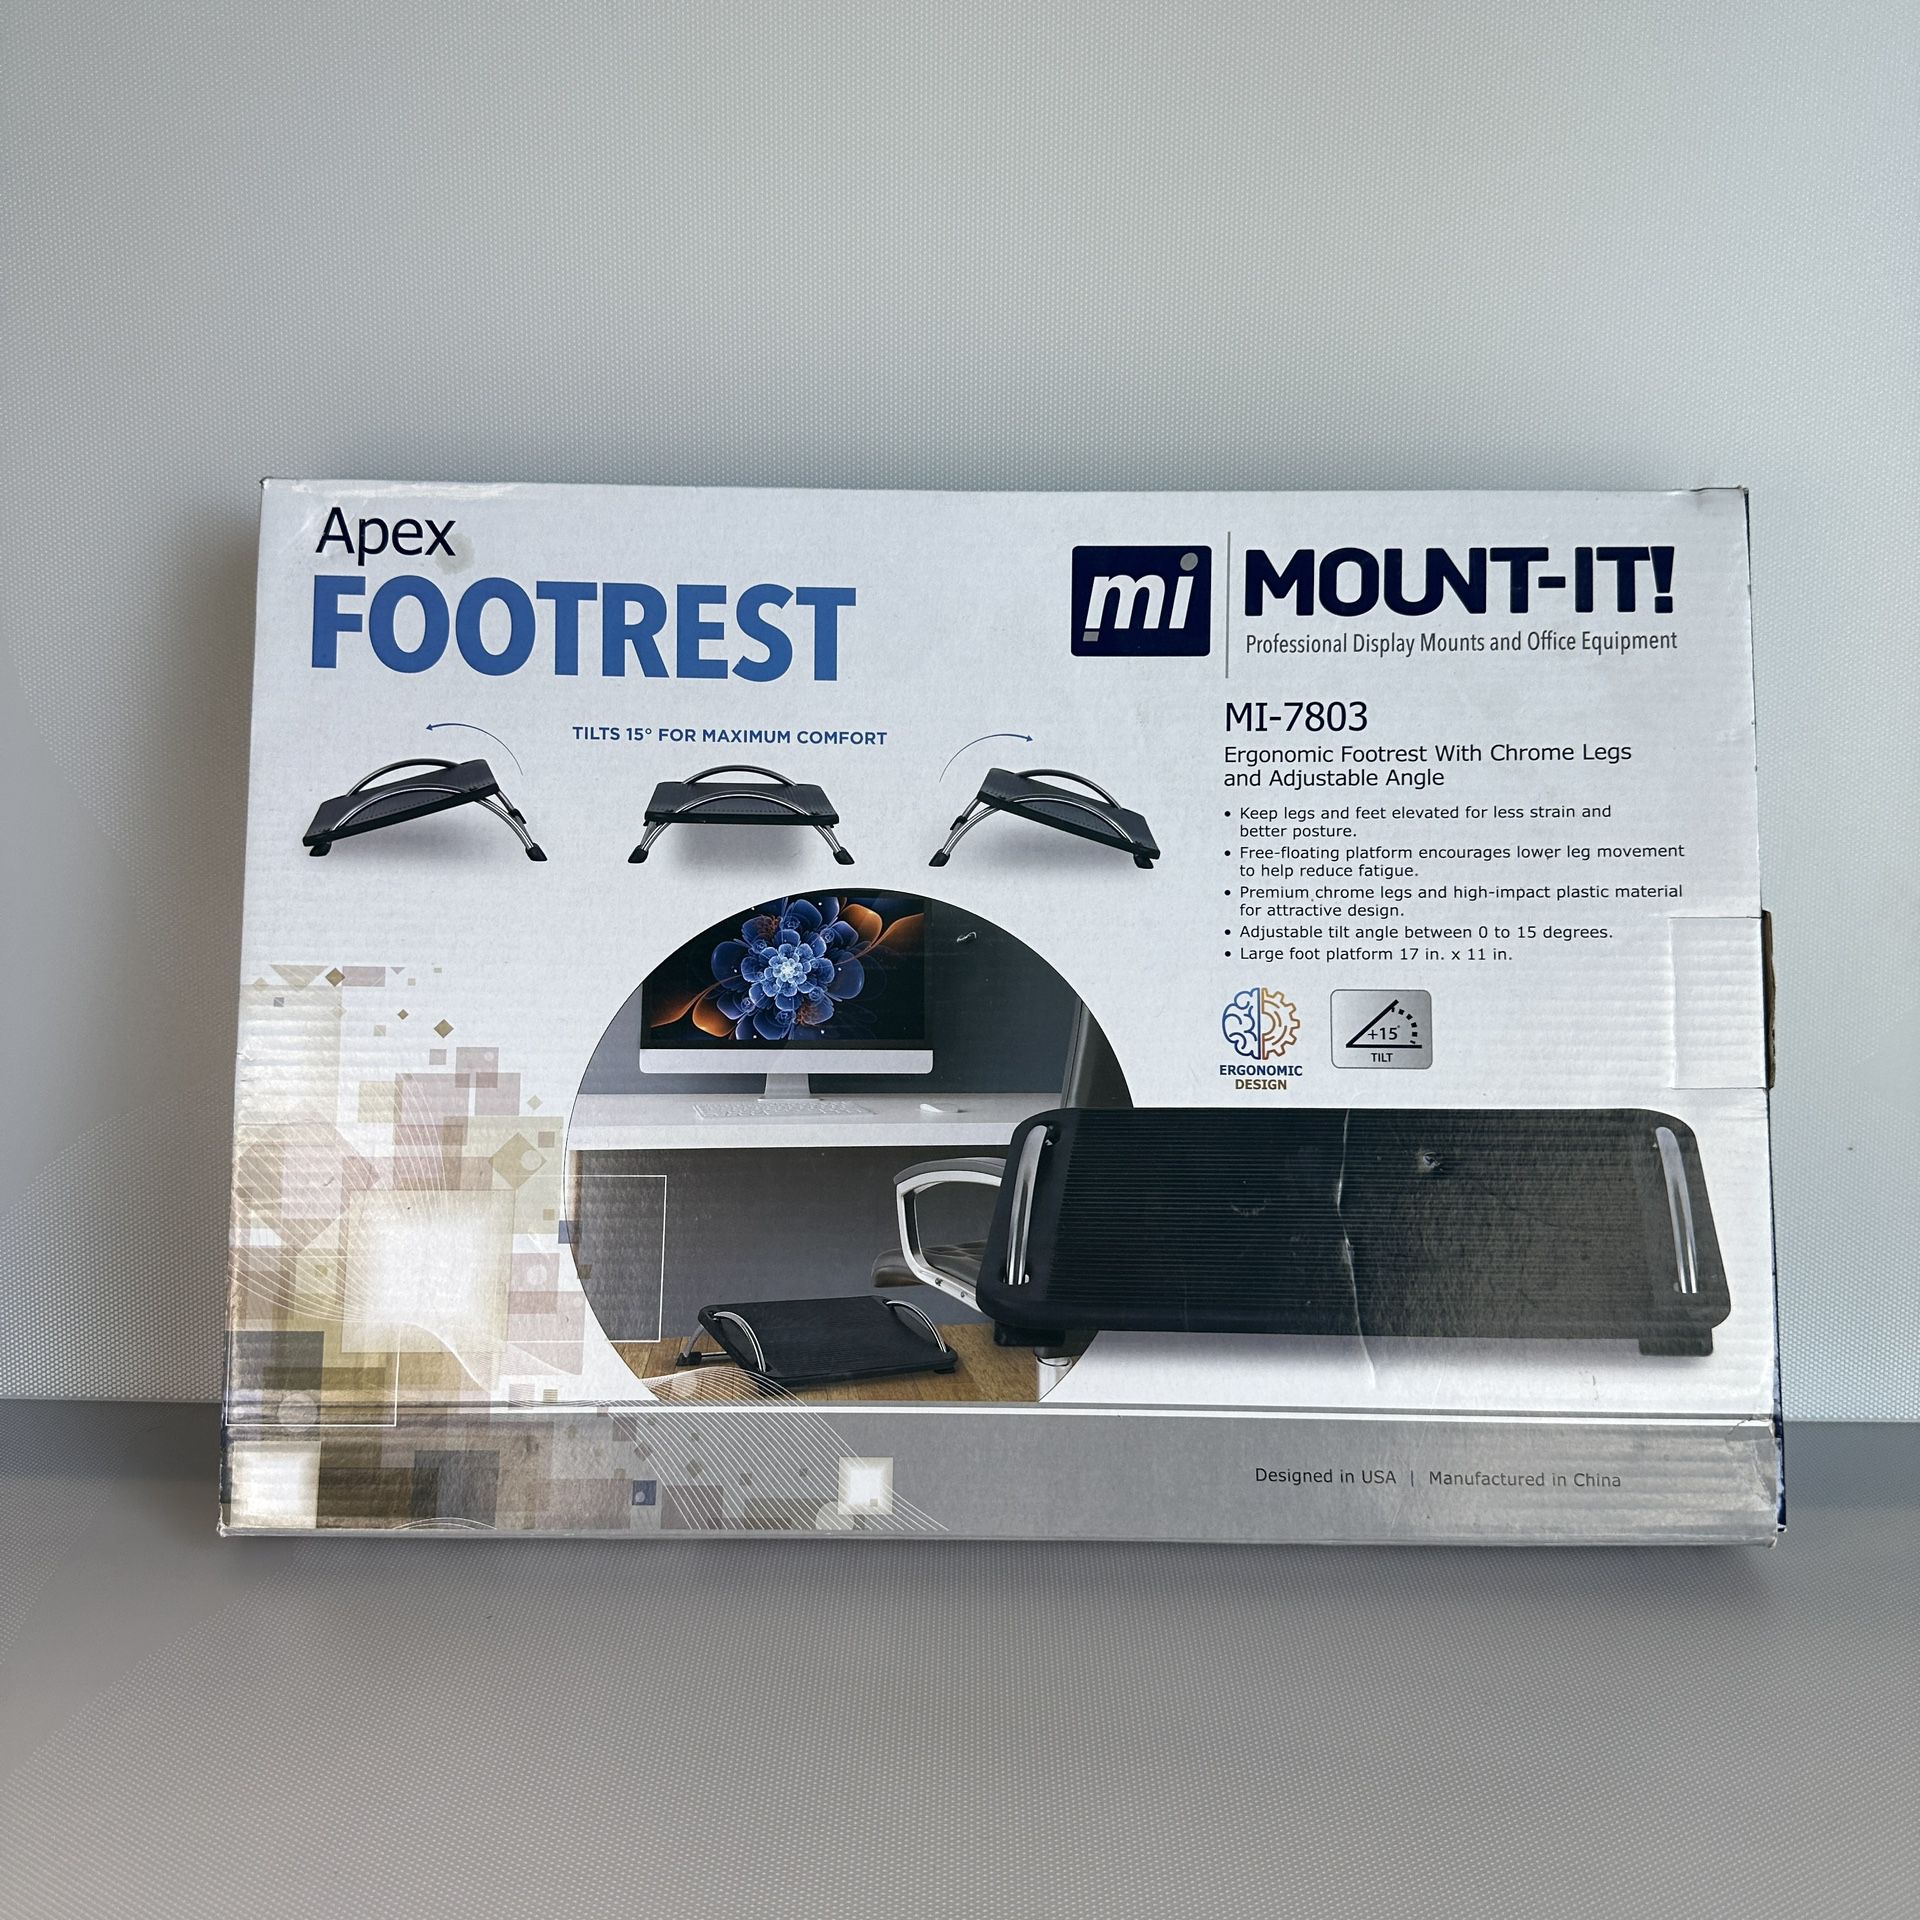 Mount-It! Tilting Footrest desk